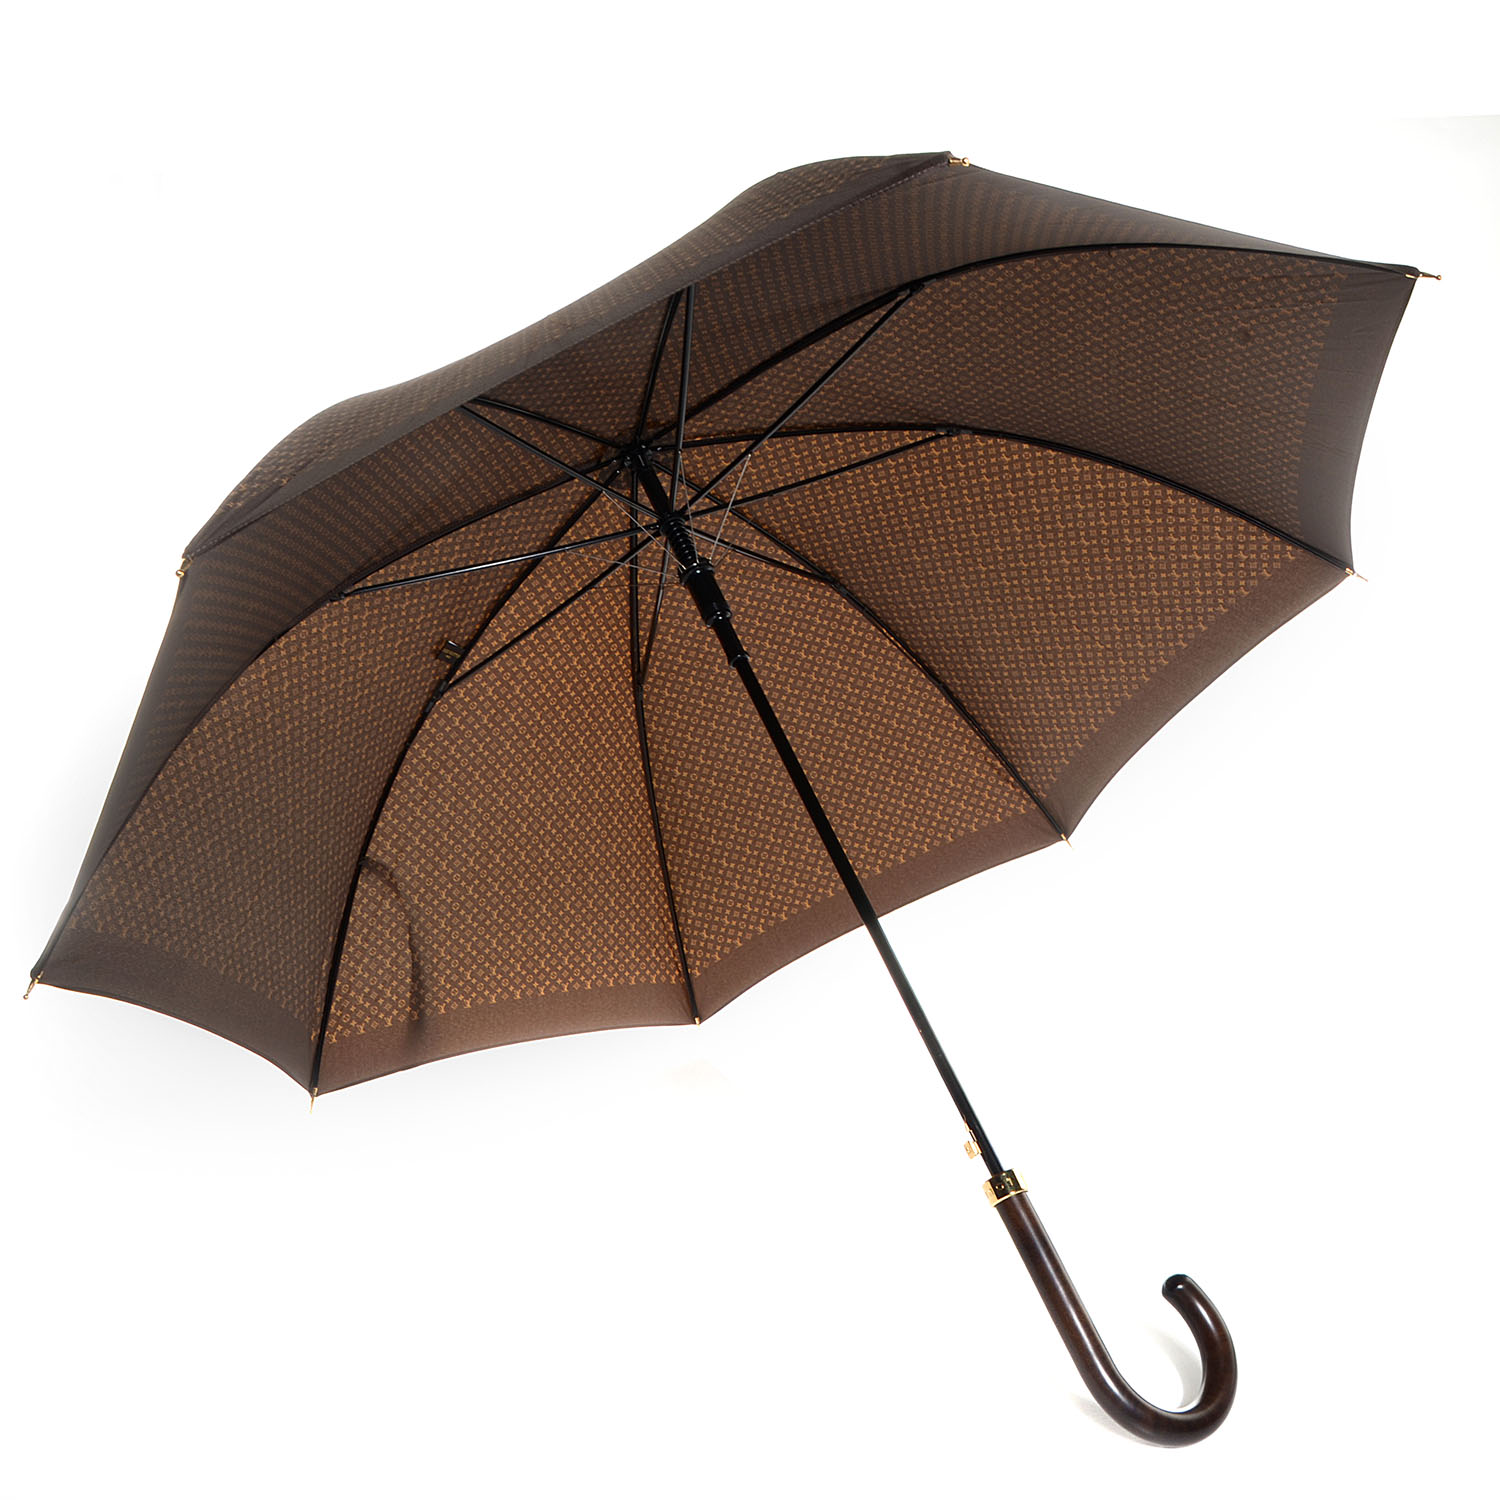 LOUIS VUITTON Monogram Ondees Compact Umbrella Marron 184191